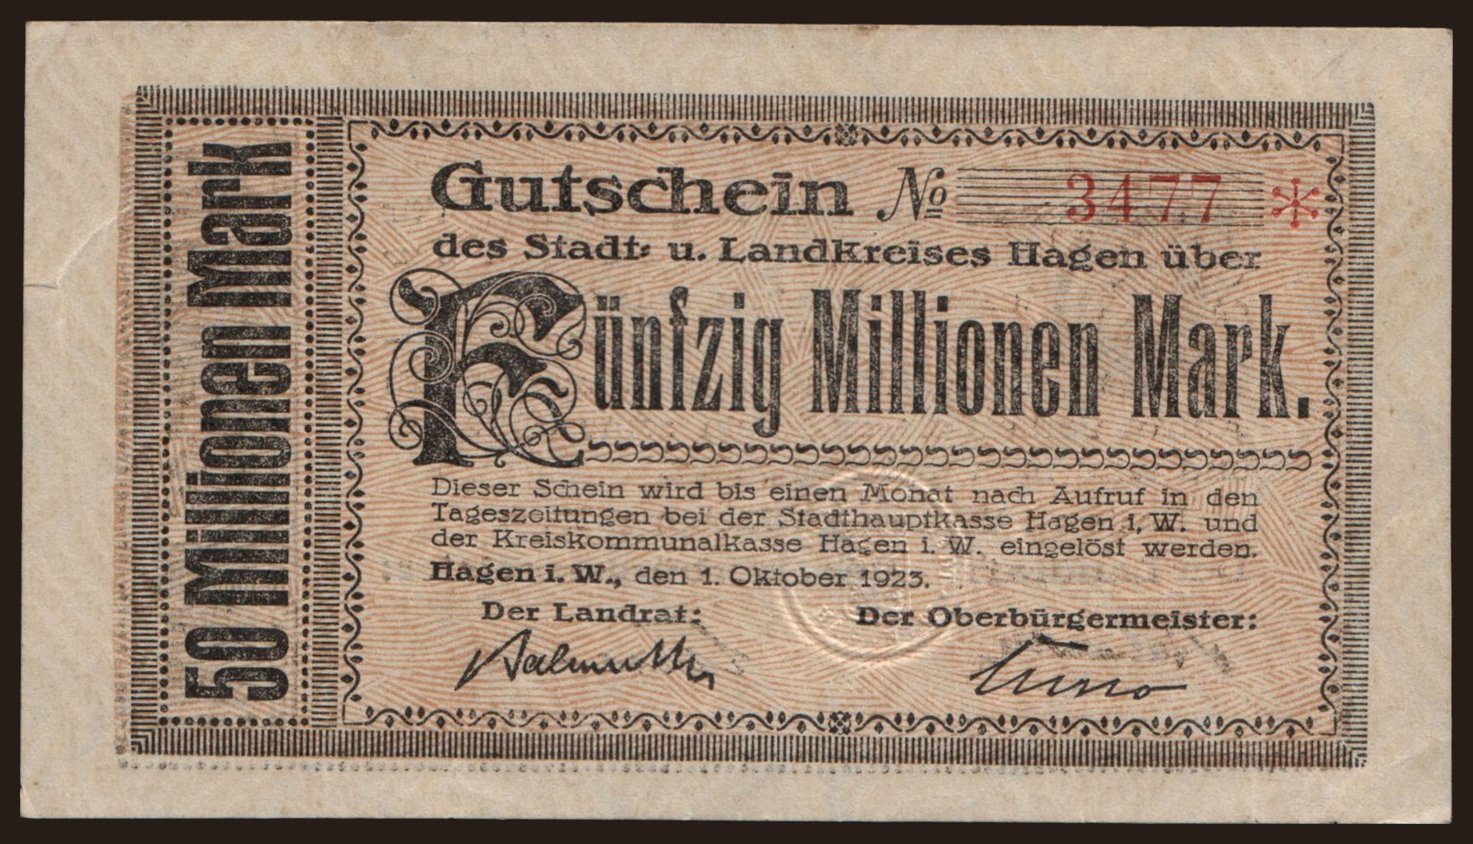 Hagen/ Stadt- und Landkreis, 50.000.000 Mark, 1923